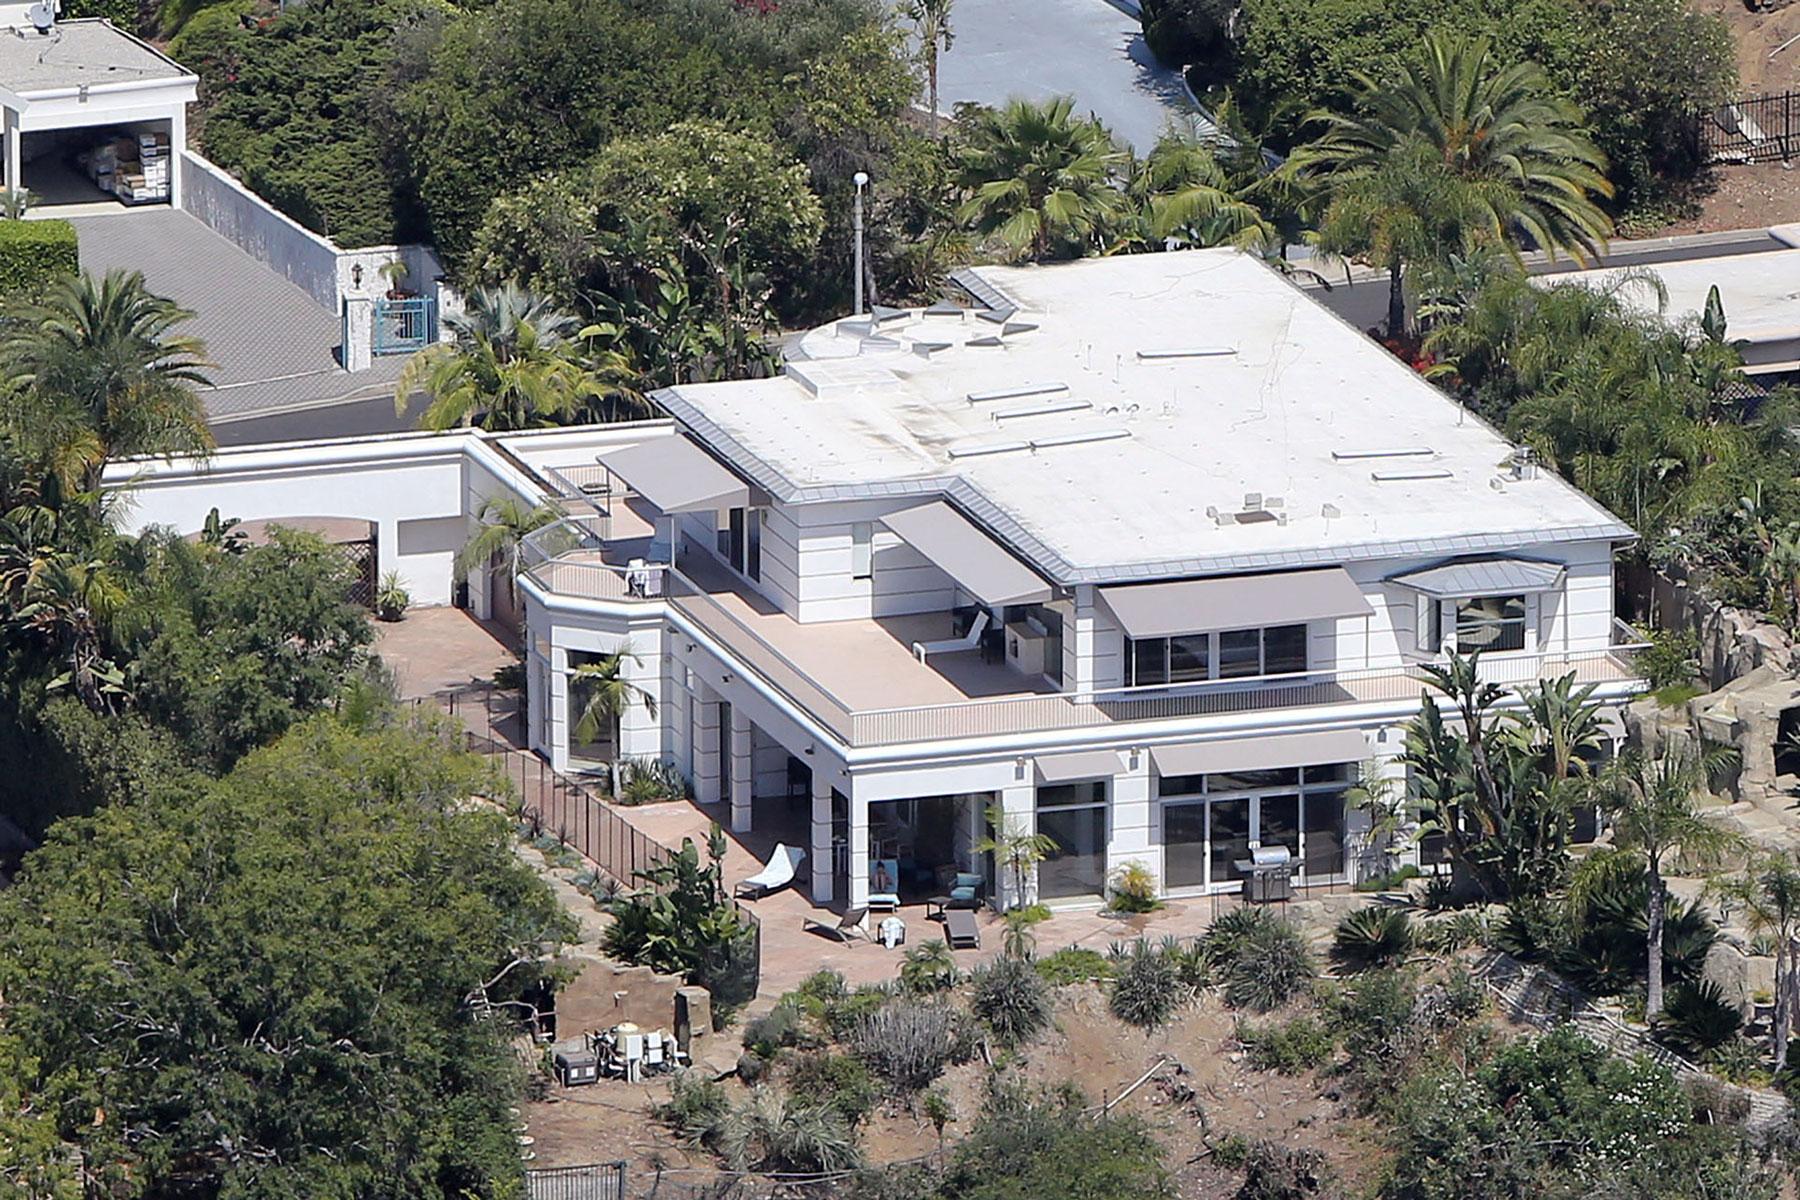 Gör som Beckham Precis som David och Victoria Beckham väljer Gerrards att bo i det berömda området med 90210 som postkod. Lyxvillan är belägen bara minuter från den berömda shoppinggatan Rodeo Drive i Hollywood och med enastående utsikt över LA.